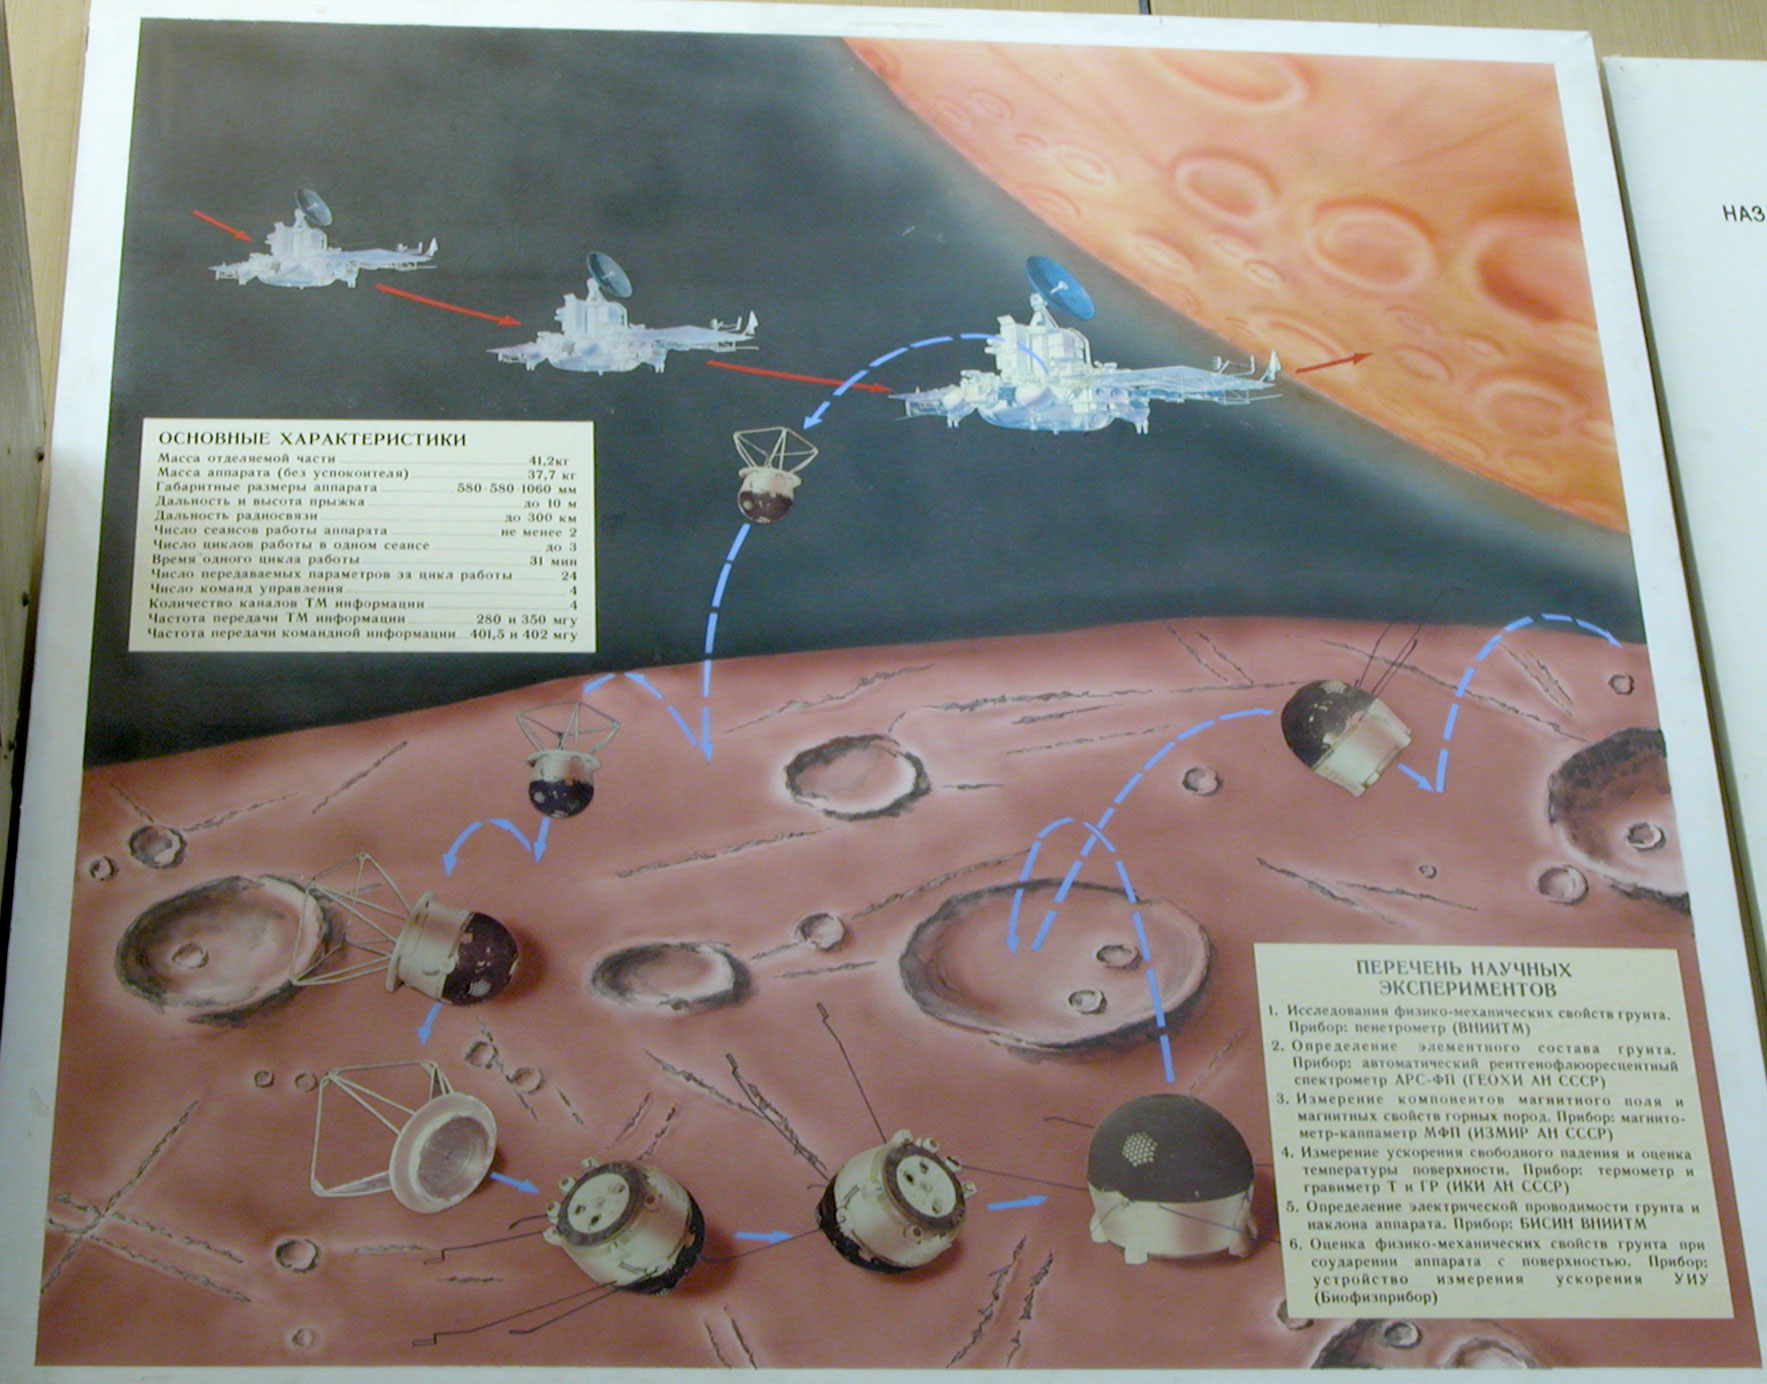 Планетоходы СССР. Марс грунт аппарат. Покорители космоса Планета размером с диск. Программы исследования Фобоса. Какой аппарат помогал исследовать поверхность луны